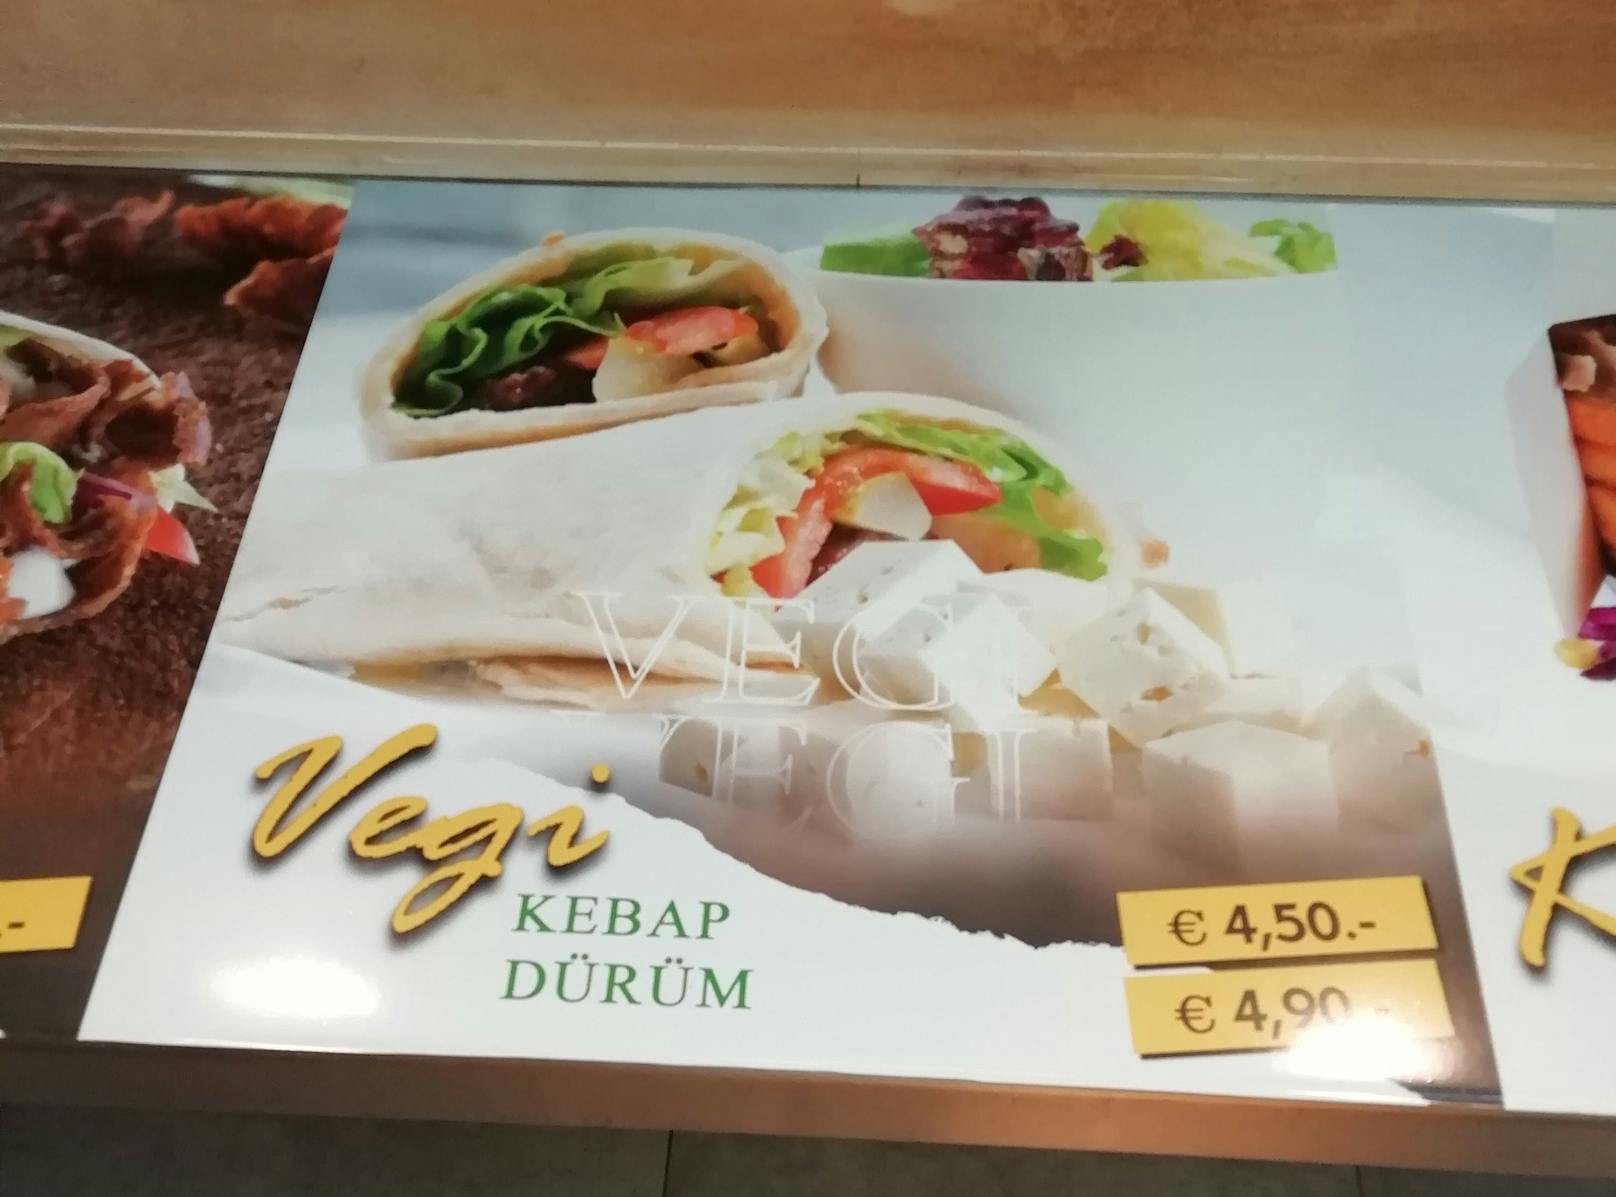 In der Pizzeria Leonardo kostet ein Kebab 4,50 Euro, derzeit ist keine Preiserhöhung geplant.